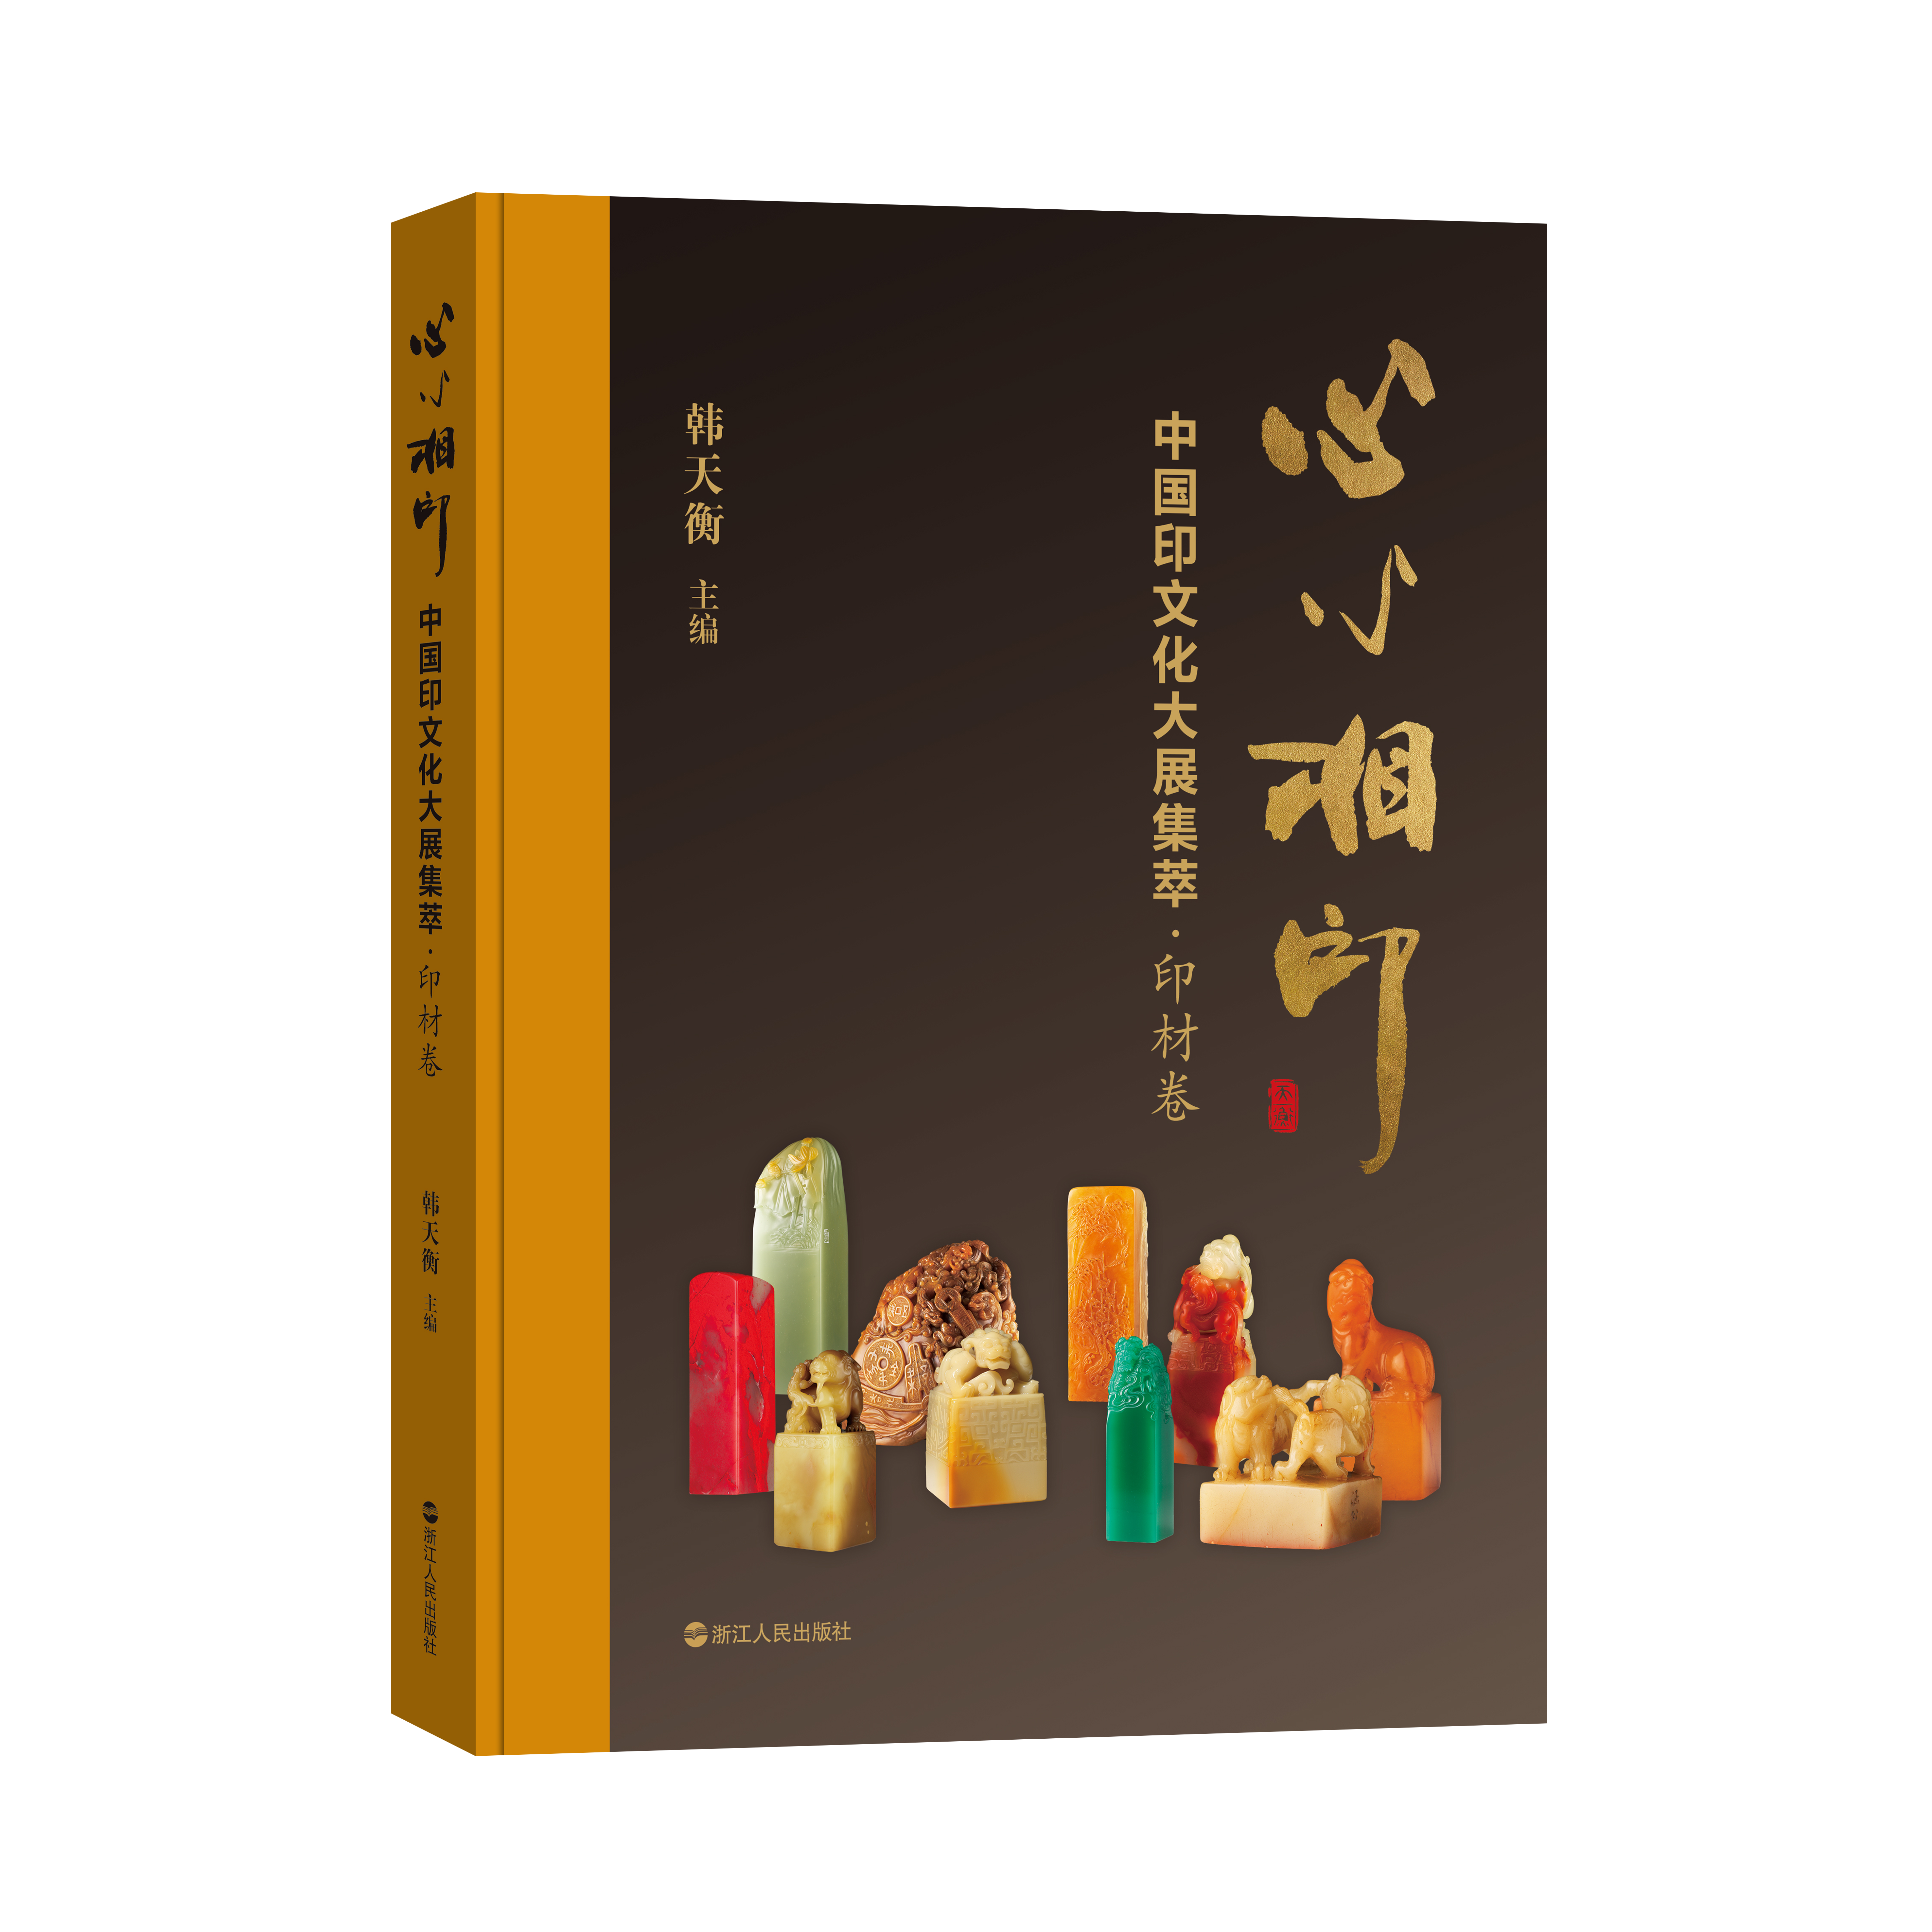 韩天衡主编《心心相印——中国印文化大展集萃》新书上市